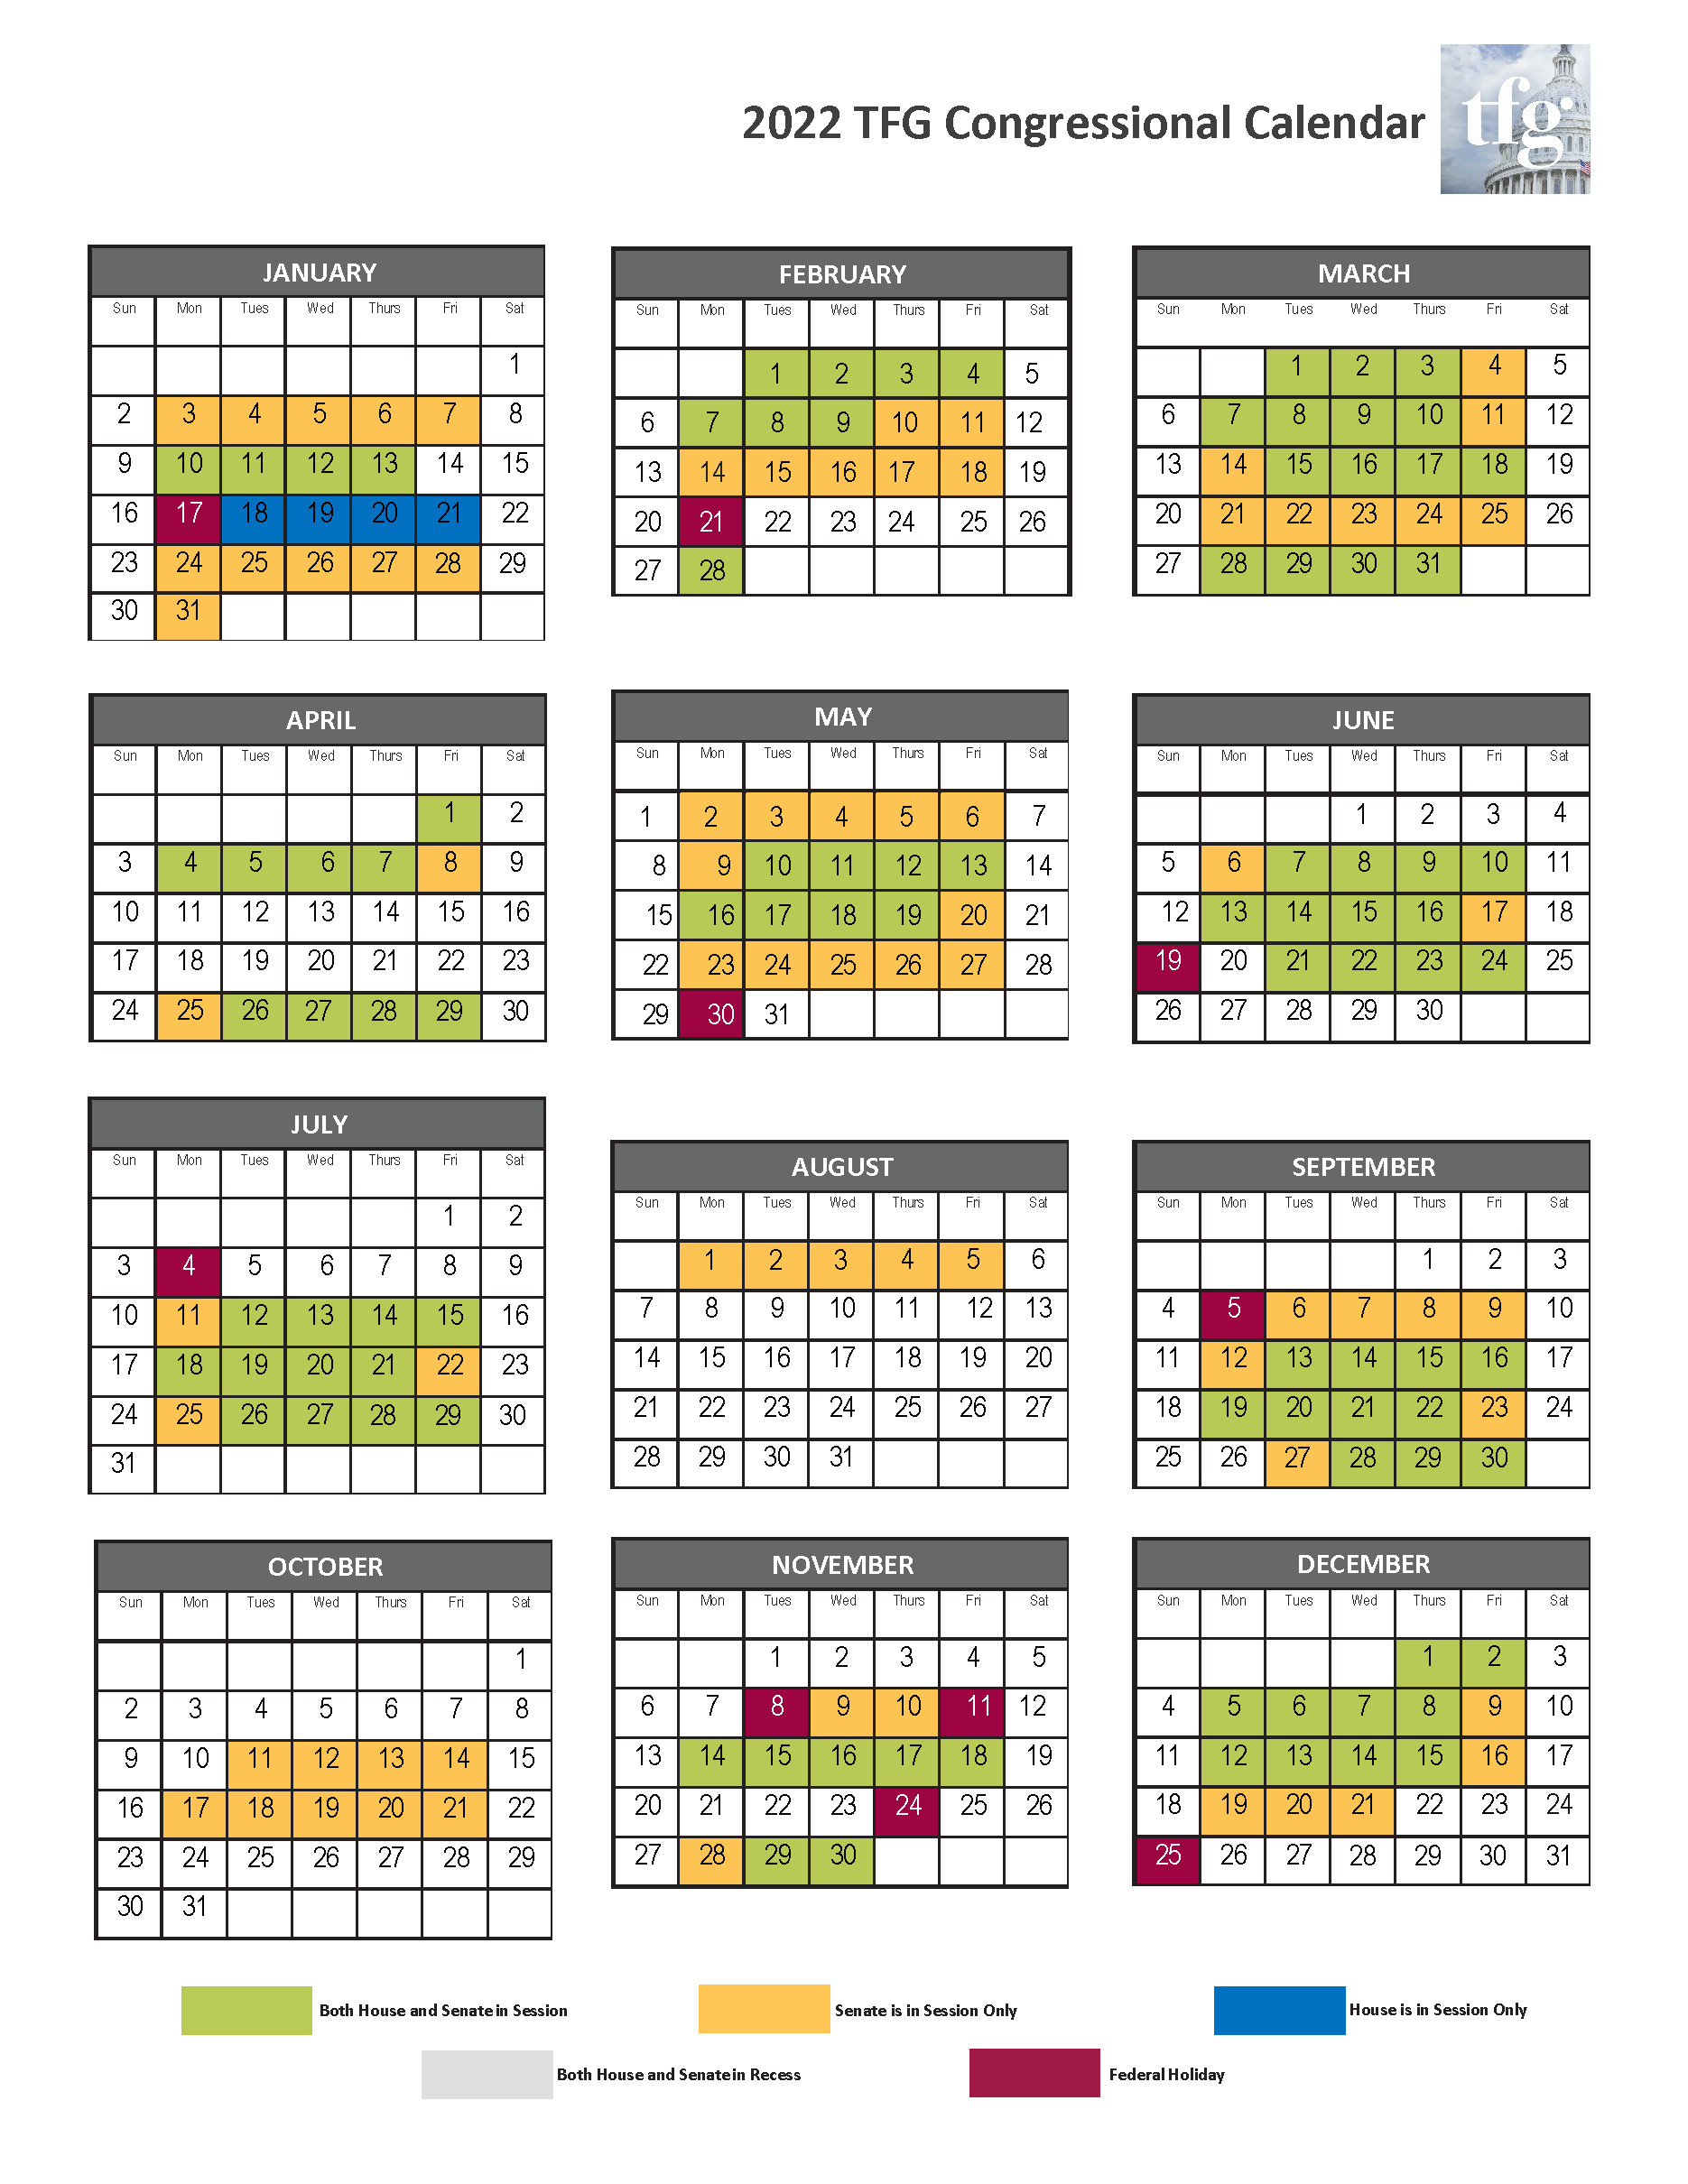 Congressional Calendar 2022 2022 Congressional Calendar